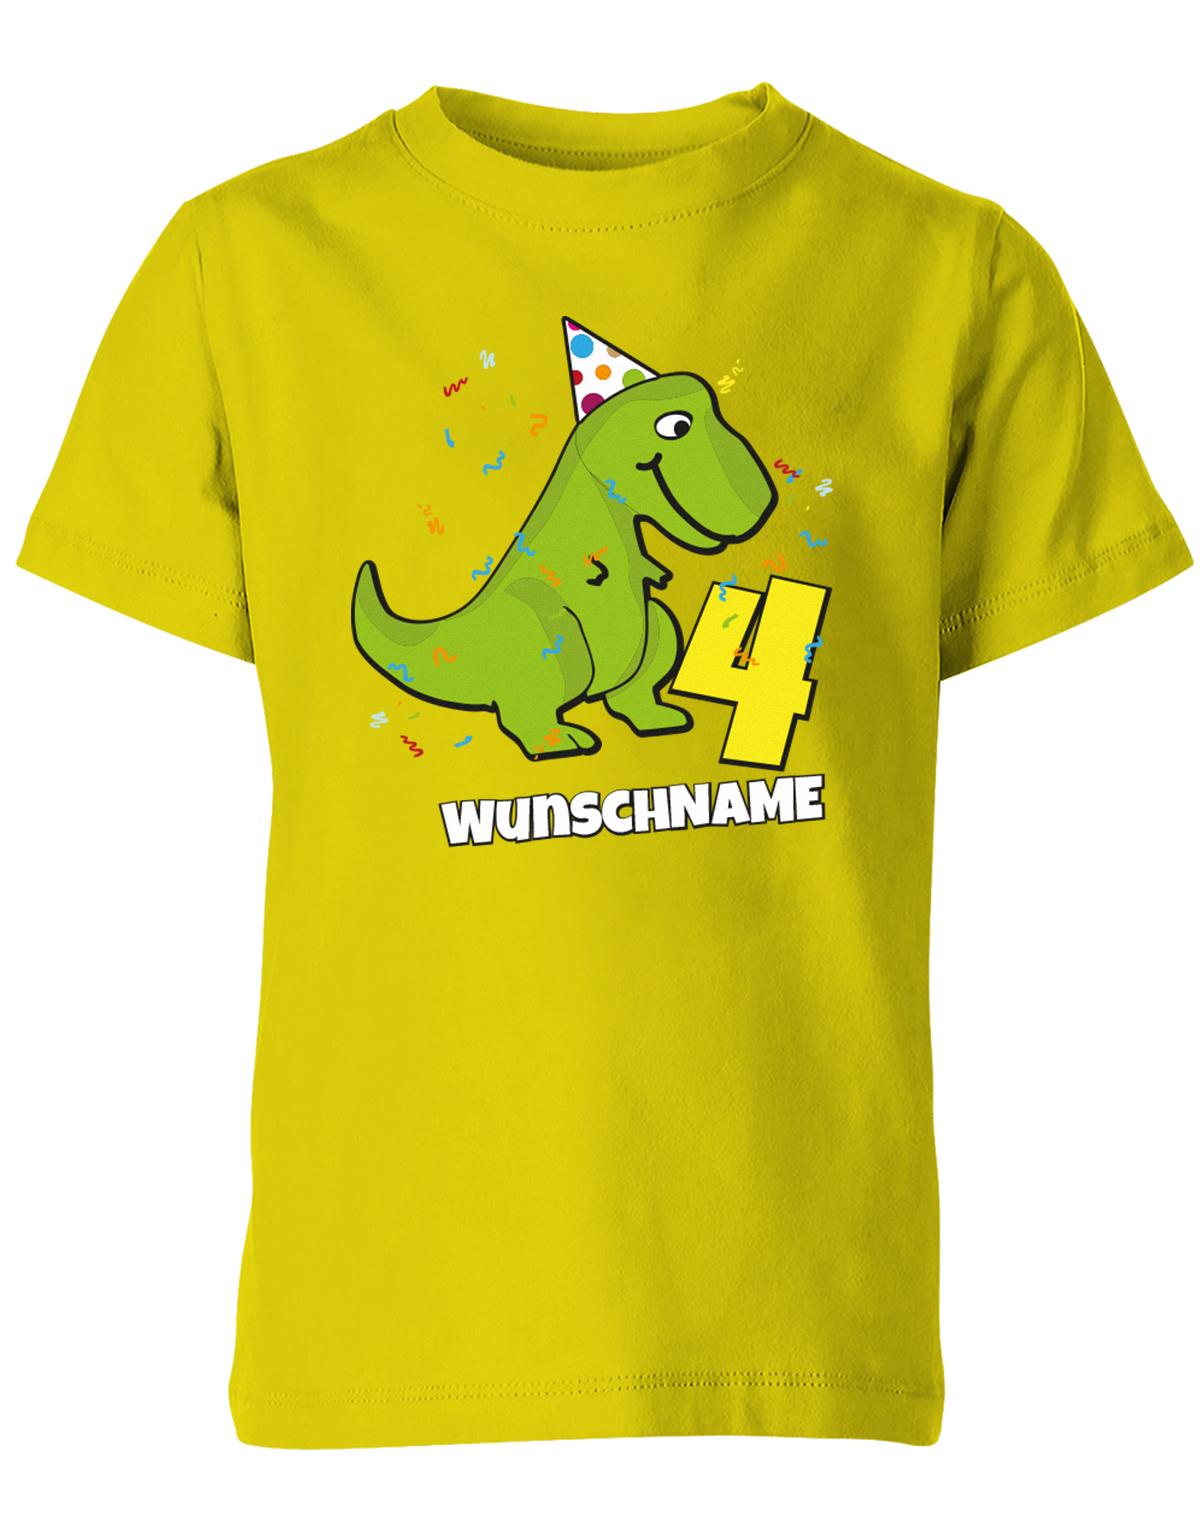 ich-bin-4-Dinosaurier-t-rex-wunschname-geburtstag-kinder-shirt-gelb